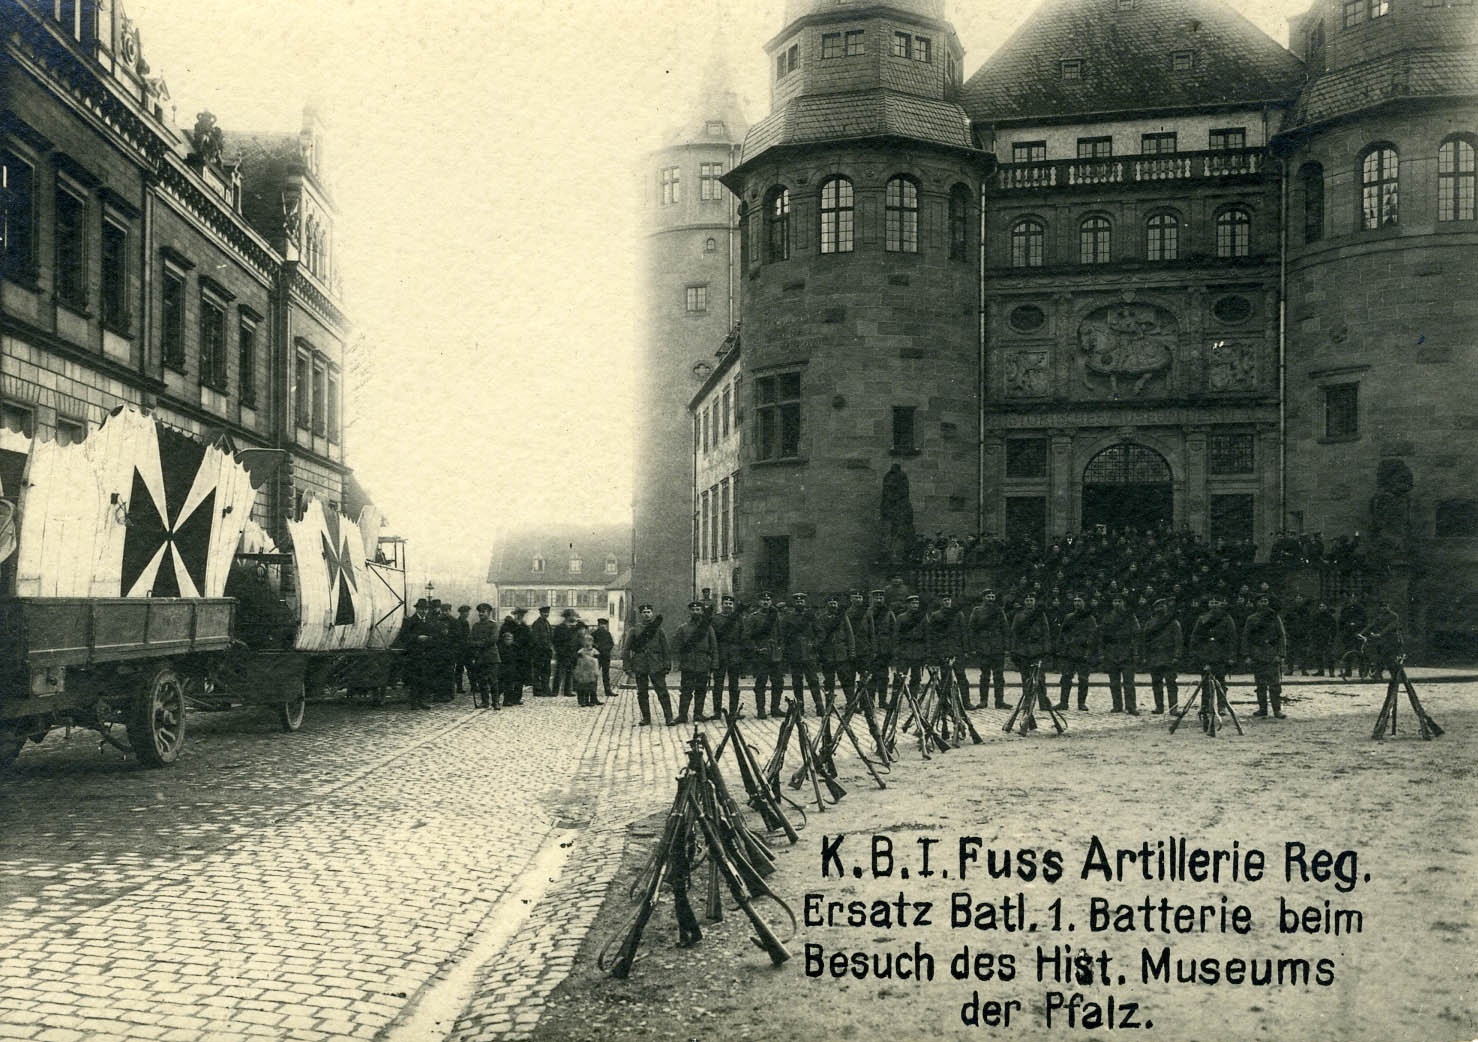 Fotografie "K.B.I. Fuss Artillerie Regiment im Historischen Museum" (Historisches Museum der Pfalz, Speyer CC BY)